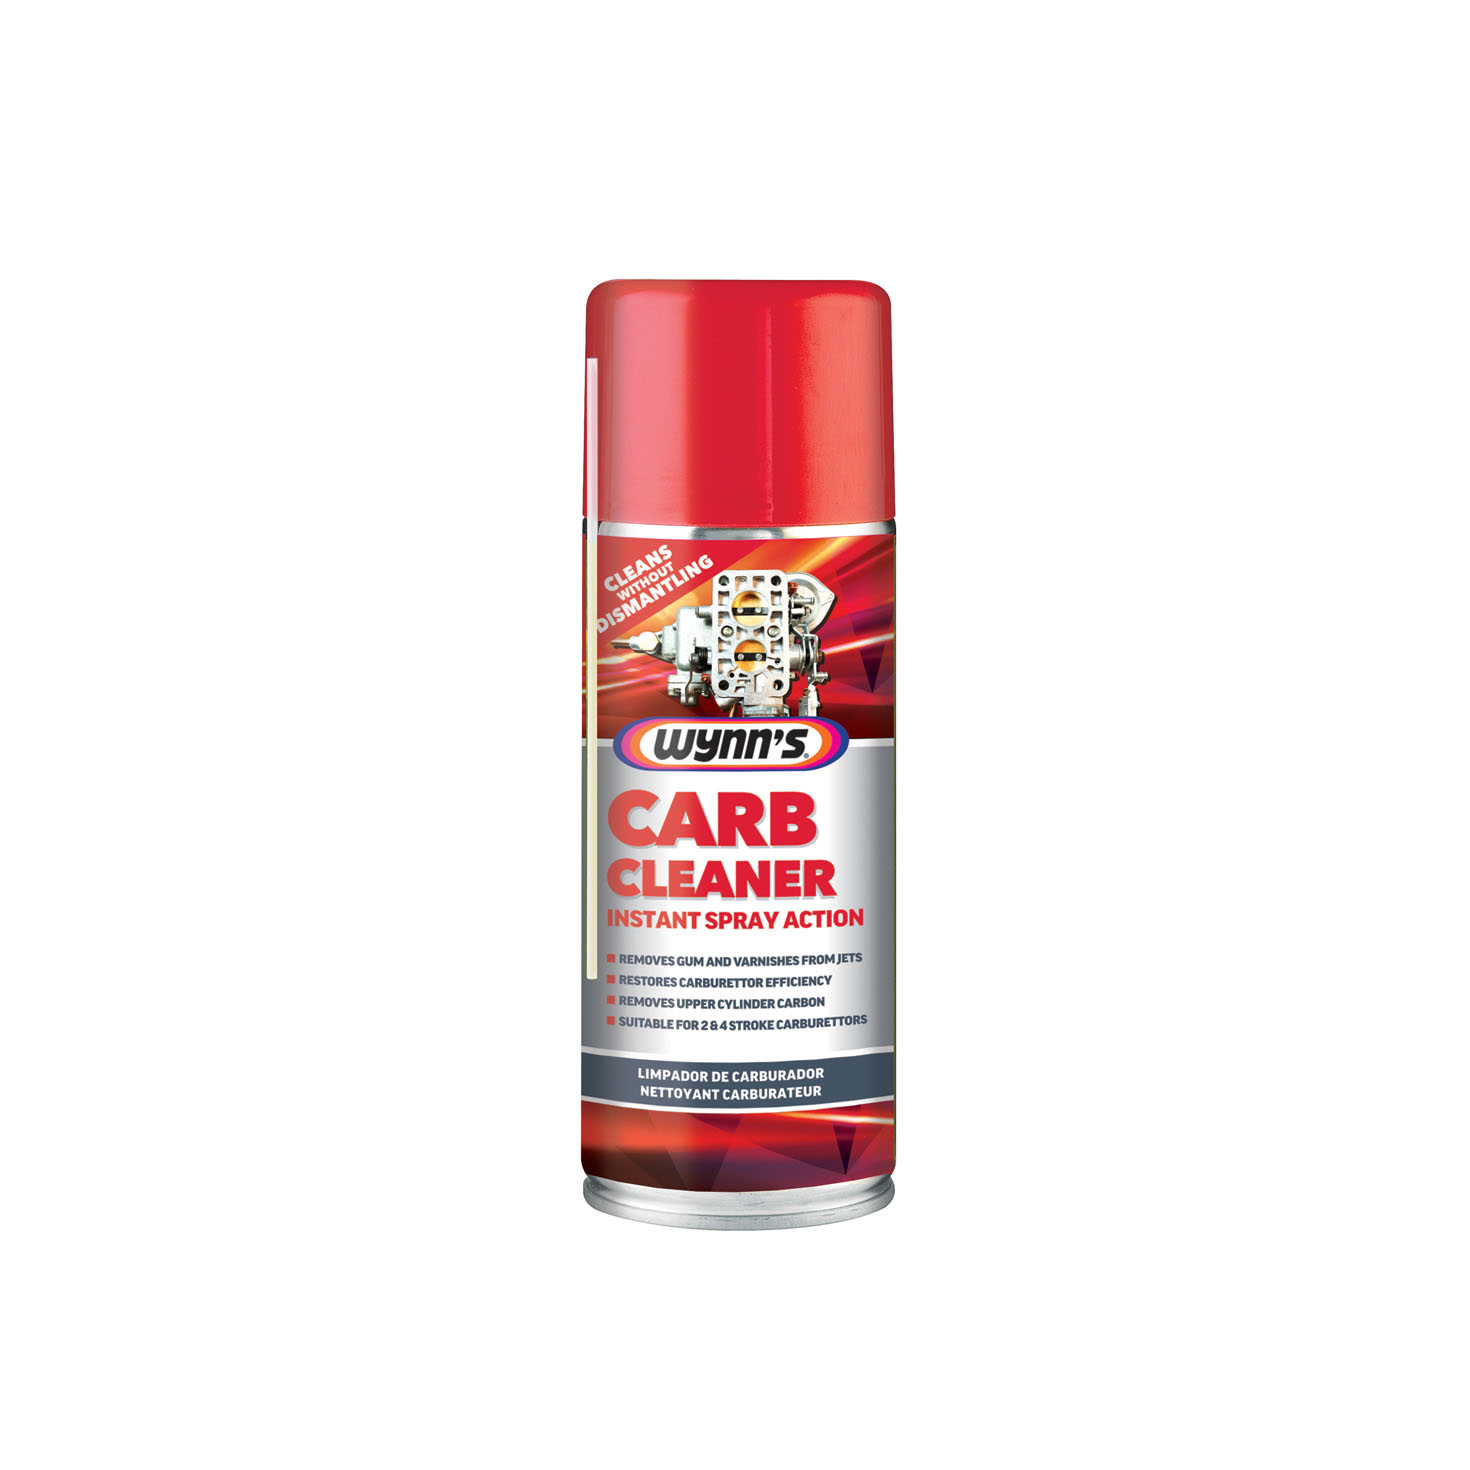 Carb clean. Carb Cleaner. F1 Carb Cleaner Spray 450ml- оригинал.. Carb Cleaner gunk. Carb Cleaner XL.